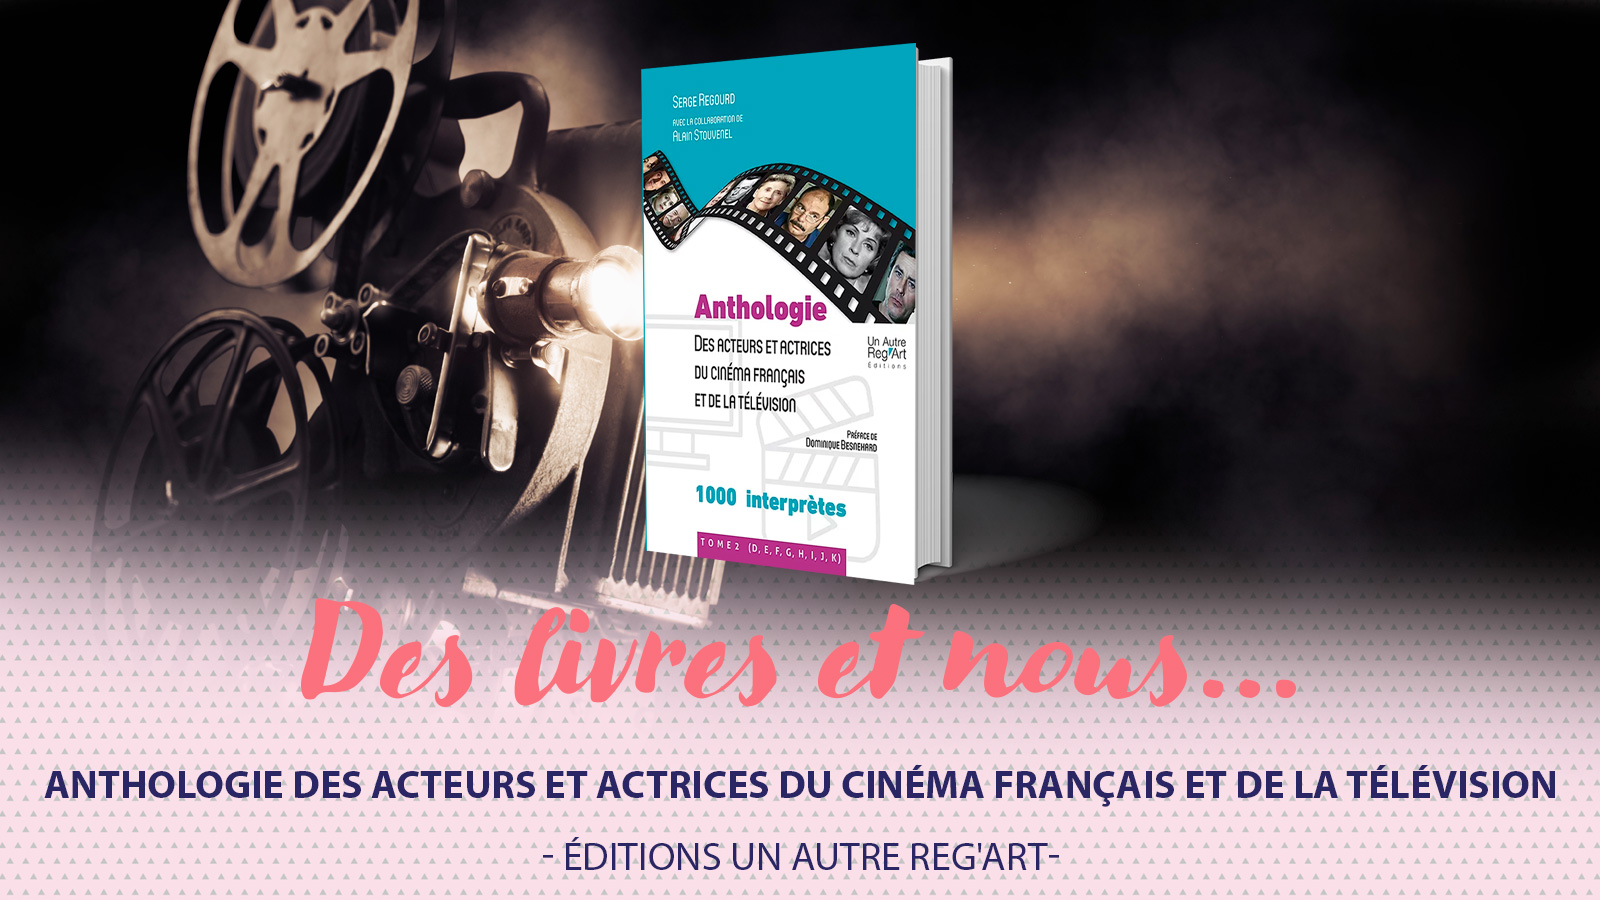 Pour tout savoir des acteurs et actrices du cinéma français